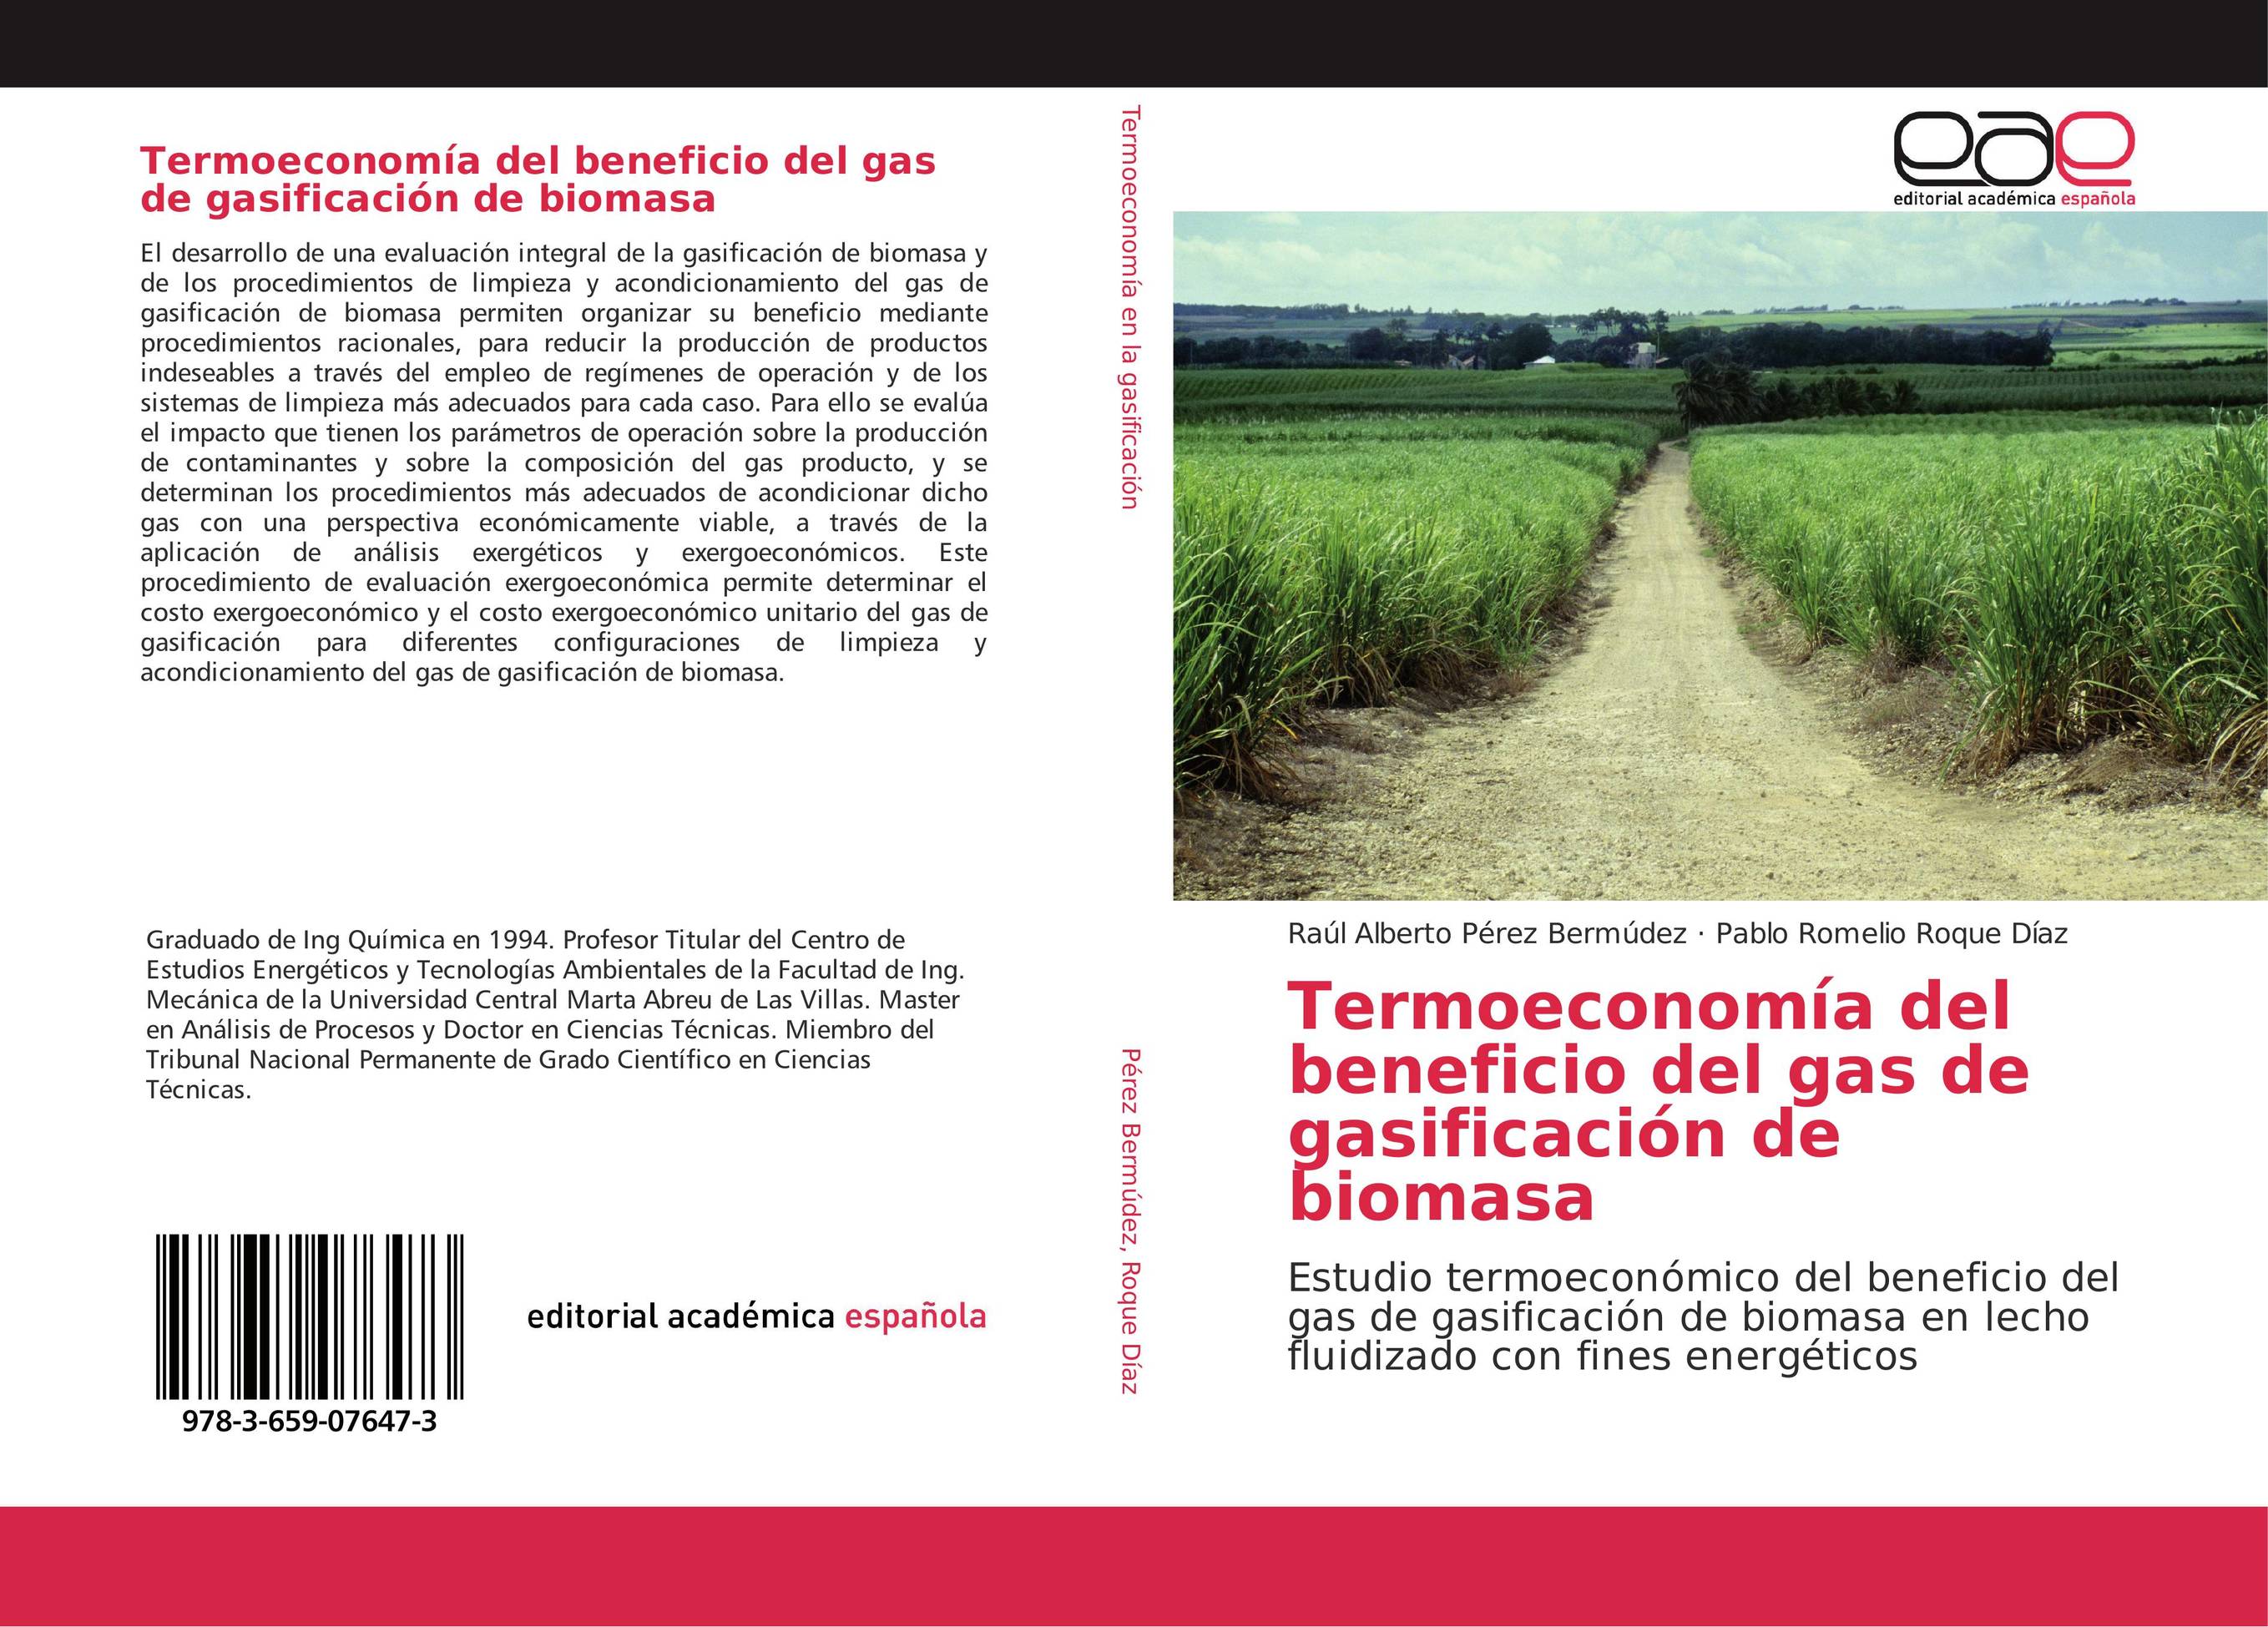 Termoeconomía del beneficio del gas de gasificación de biomasa